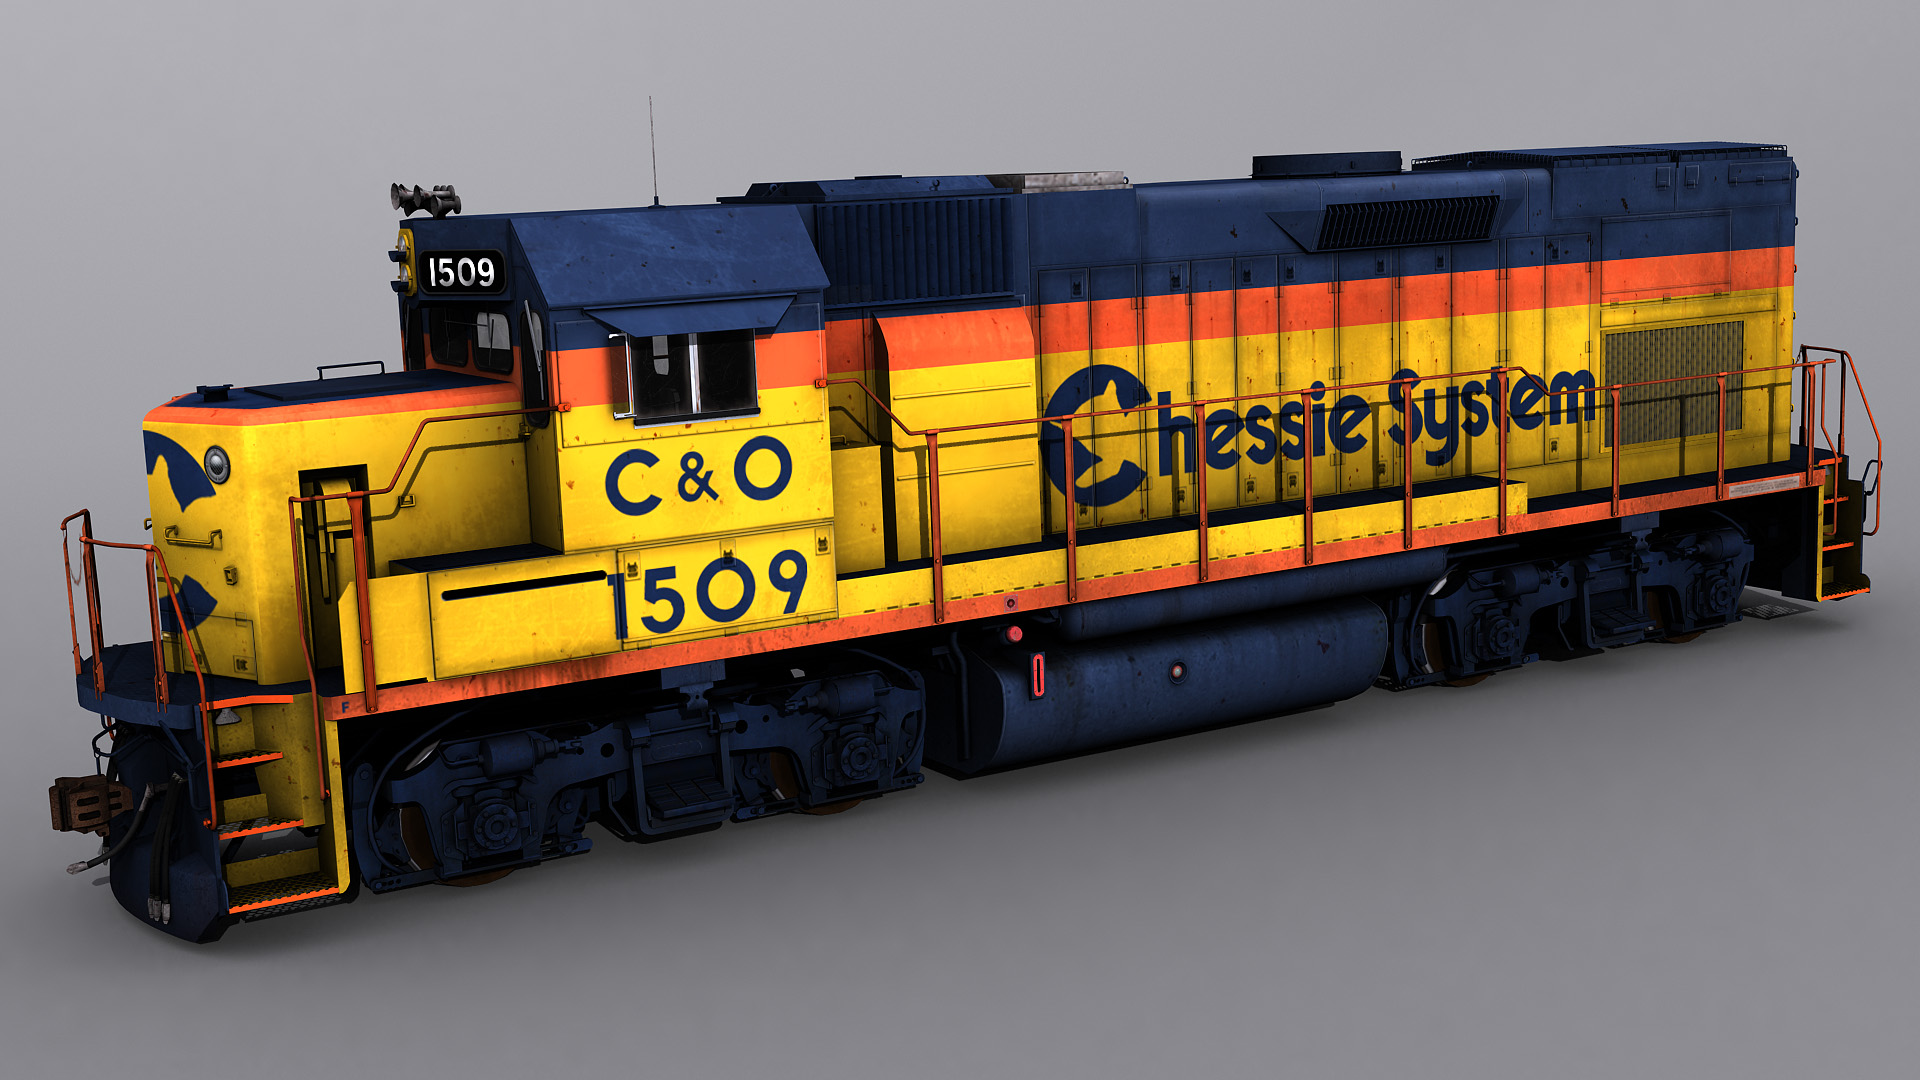 Train Simulator: Chessie System U30C Loco Add-On Pack